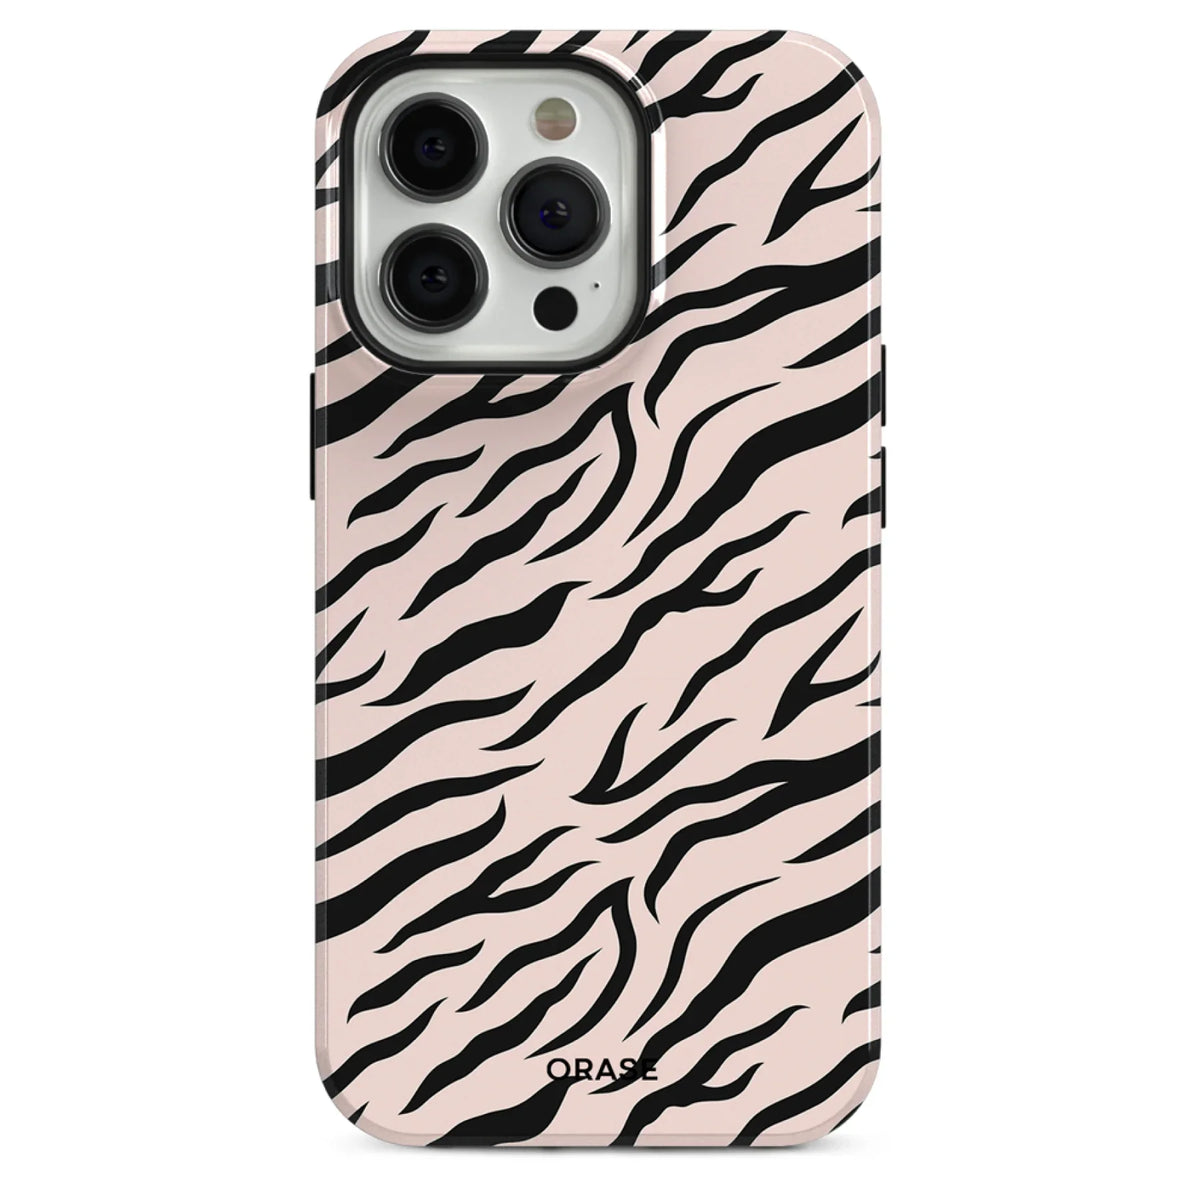 Zebra iPhone Case - iPhone 12 Mini